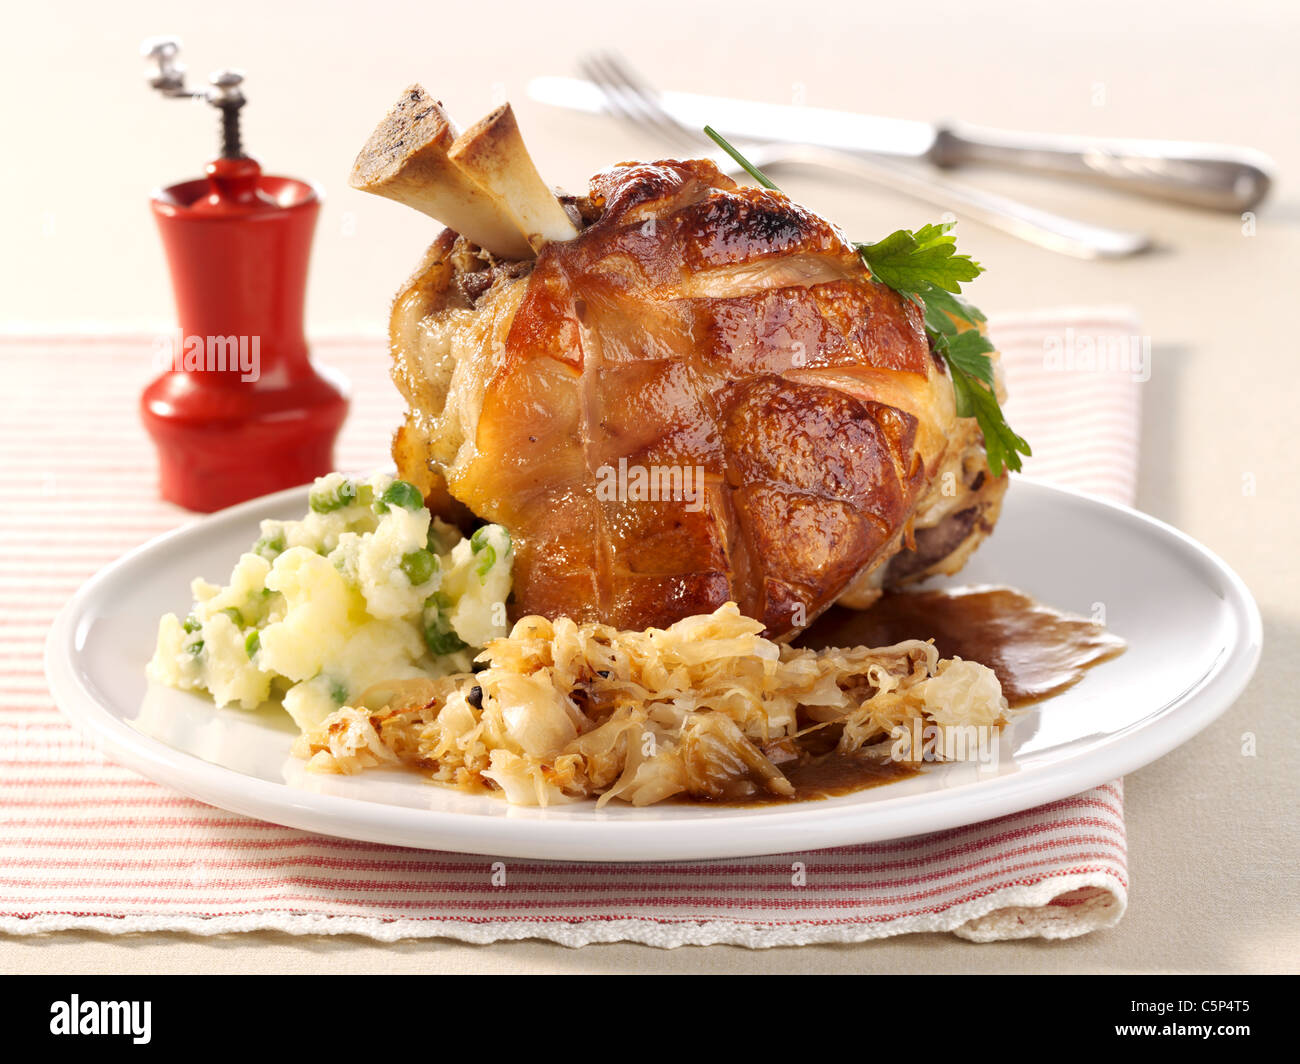 Grilled knuckle of pork with sauerkraut (Eisbein Stock Photo - Alamy